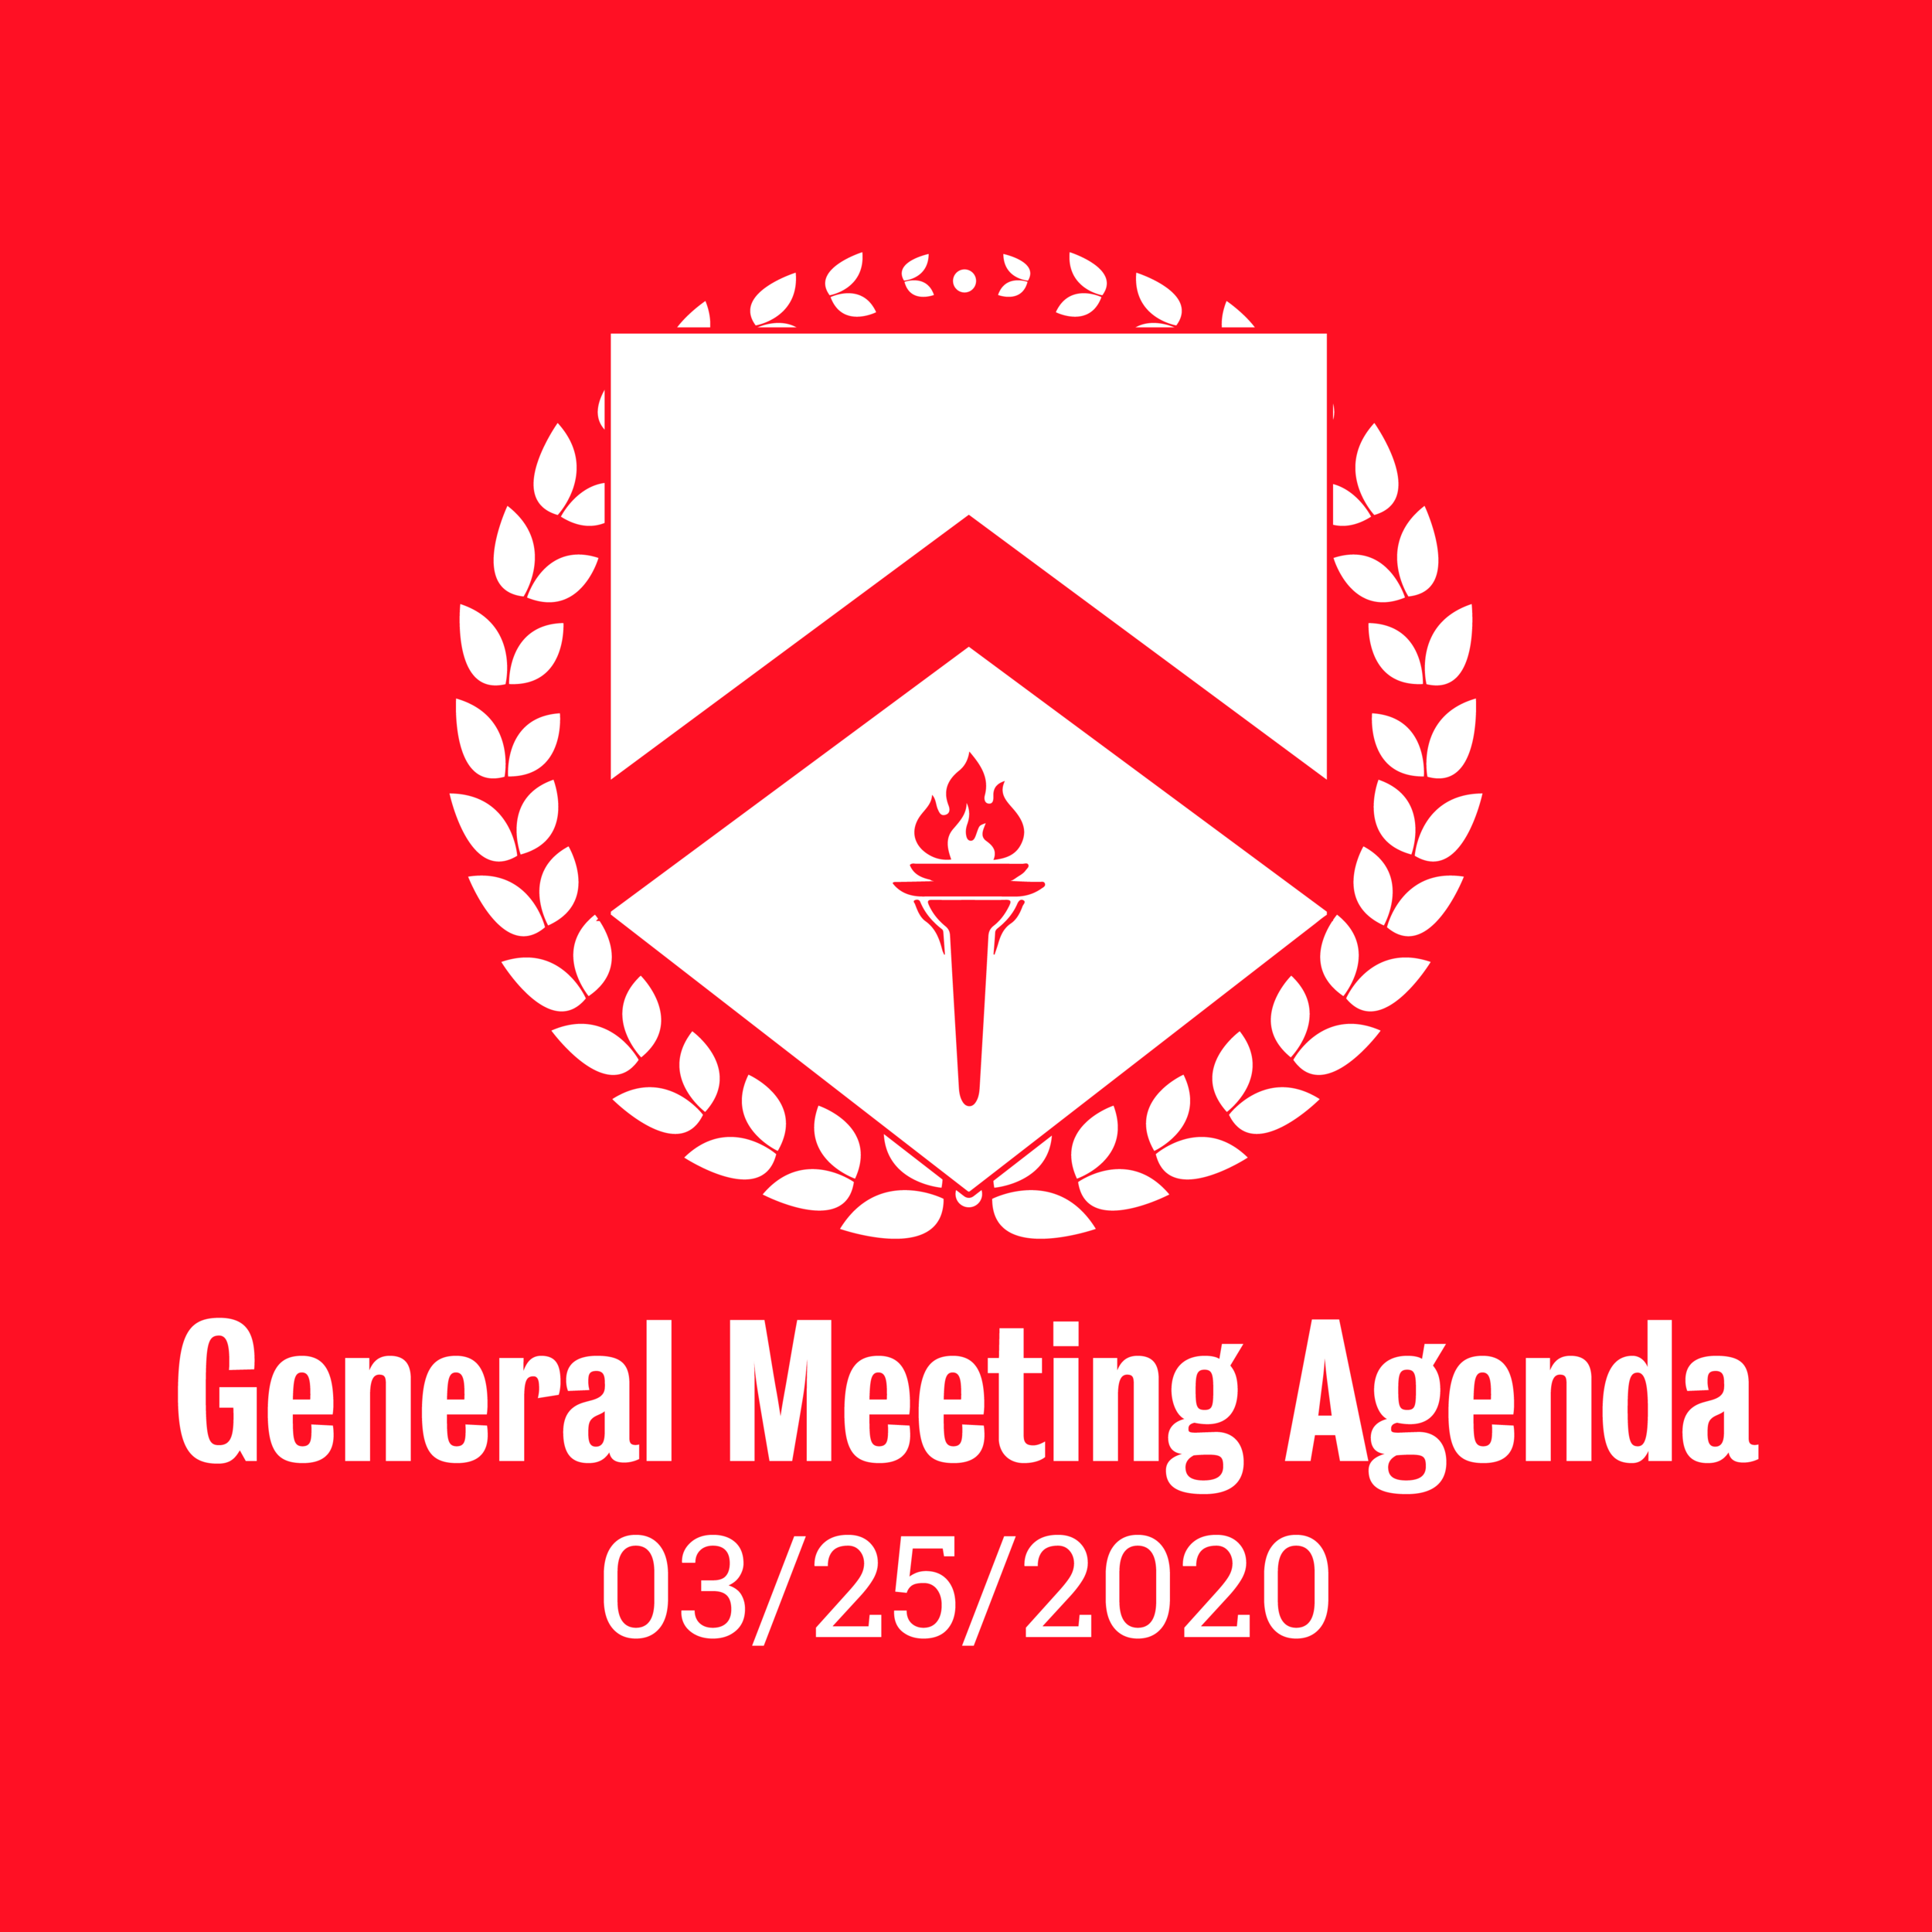 General Meeting Agenda 03/25/2020